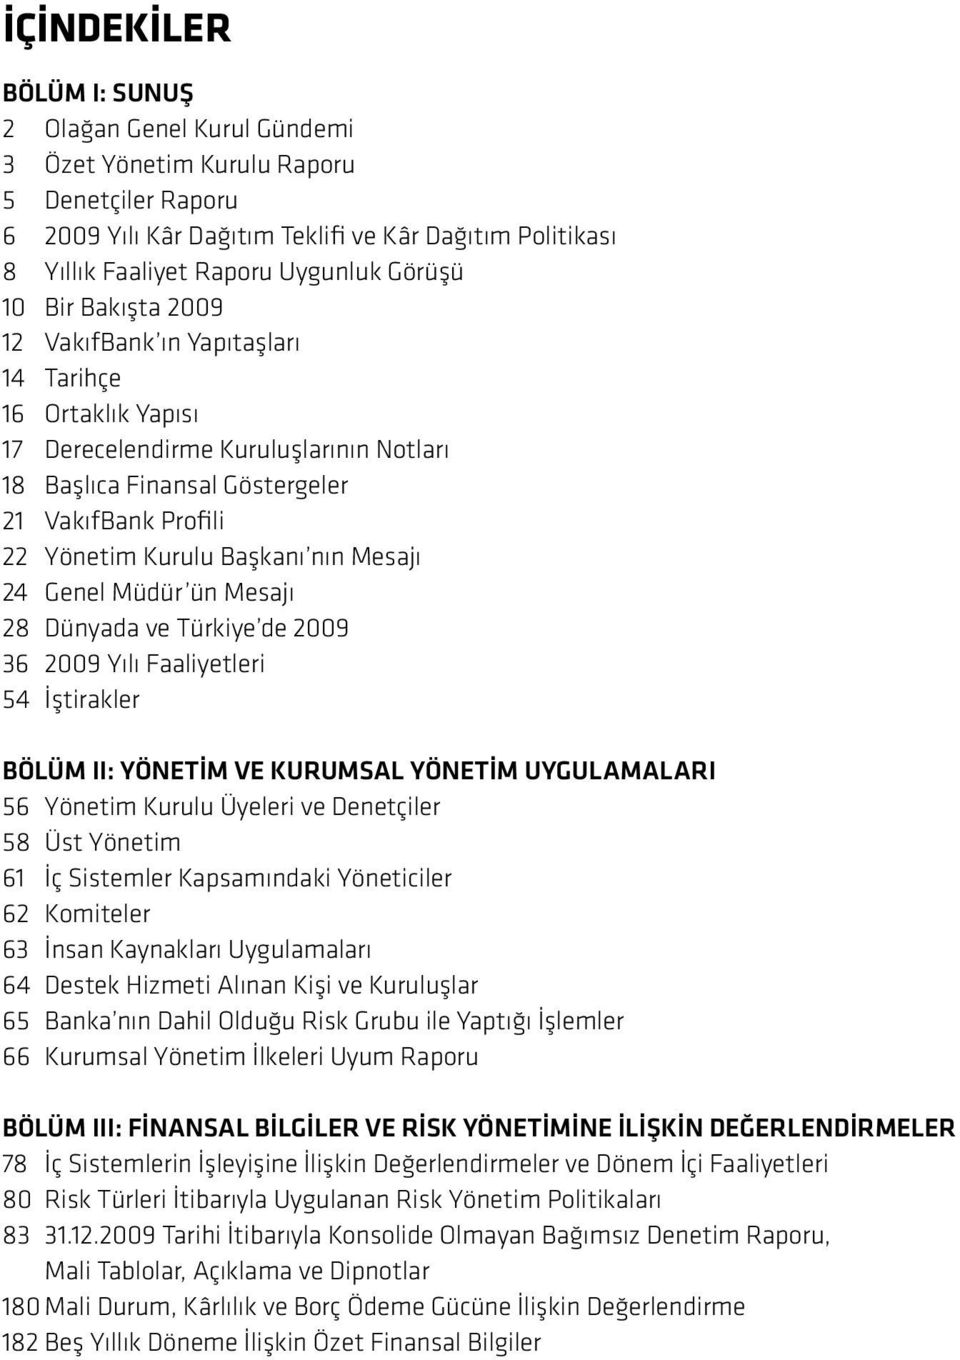 Başkanı nın Mesajı 24 Genel Müdür ün Mesajı 28 Dünyada ve Türkiye de 2009 36 2009 Yılı Faaliyetleri 54 İştirakler BÖLÜM II: YÖNETİM VE KURUMSAL YÖNETİM UYGULAMALARI 56 Yönetim Kurulu Üyeleri ve